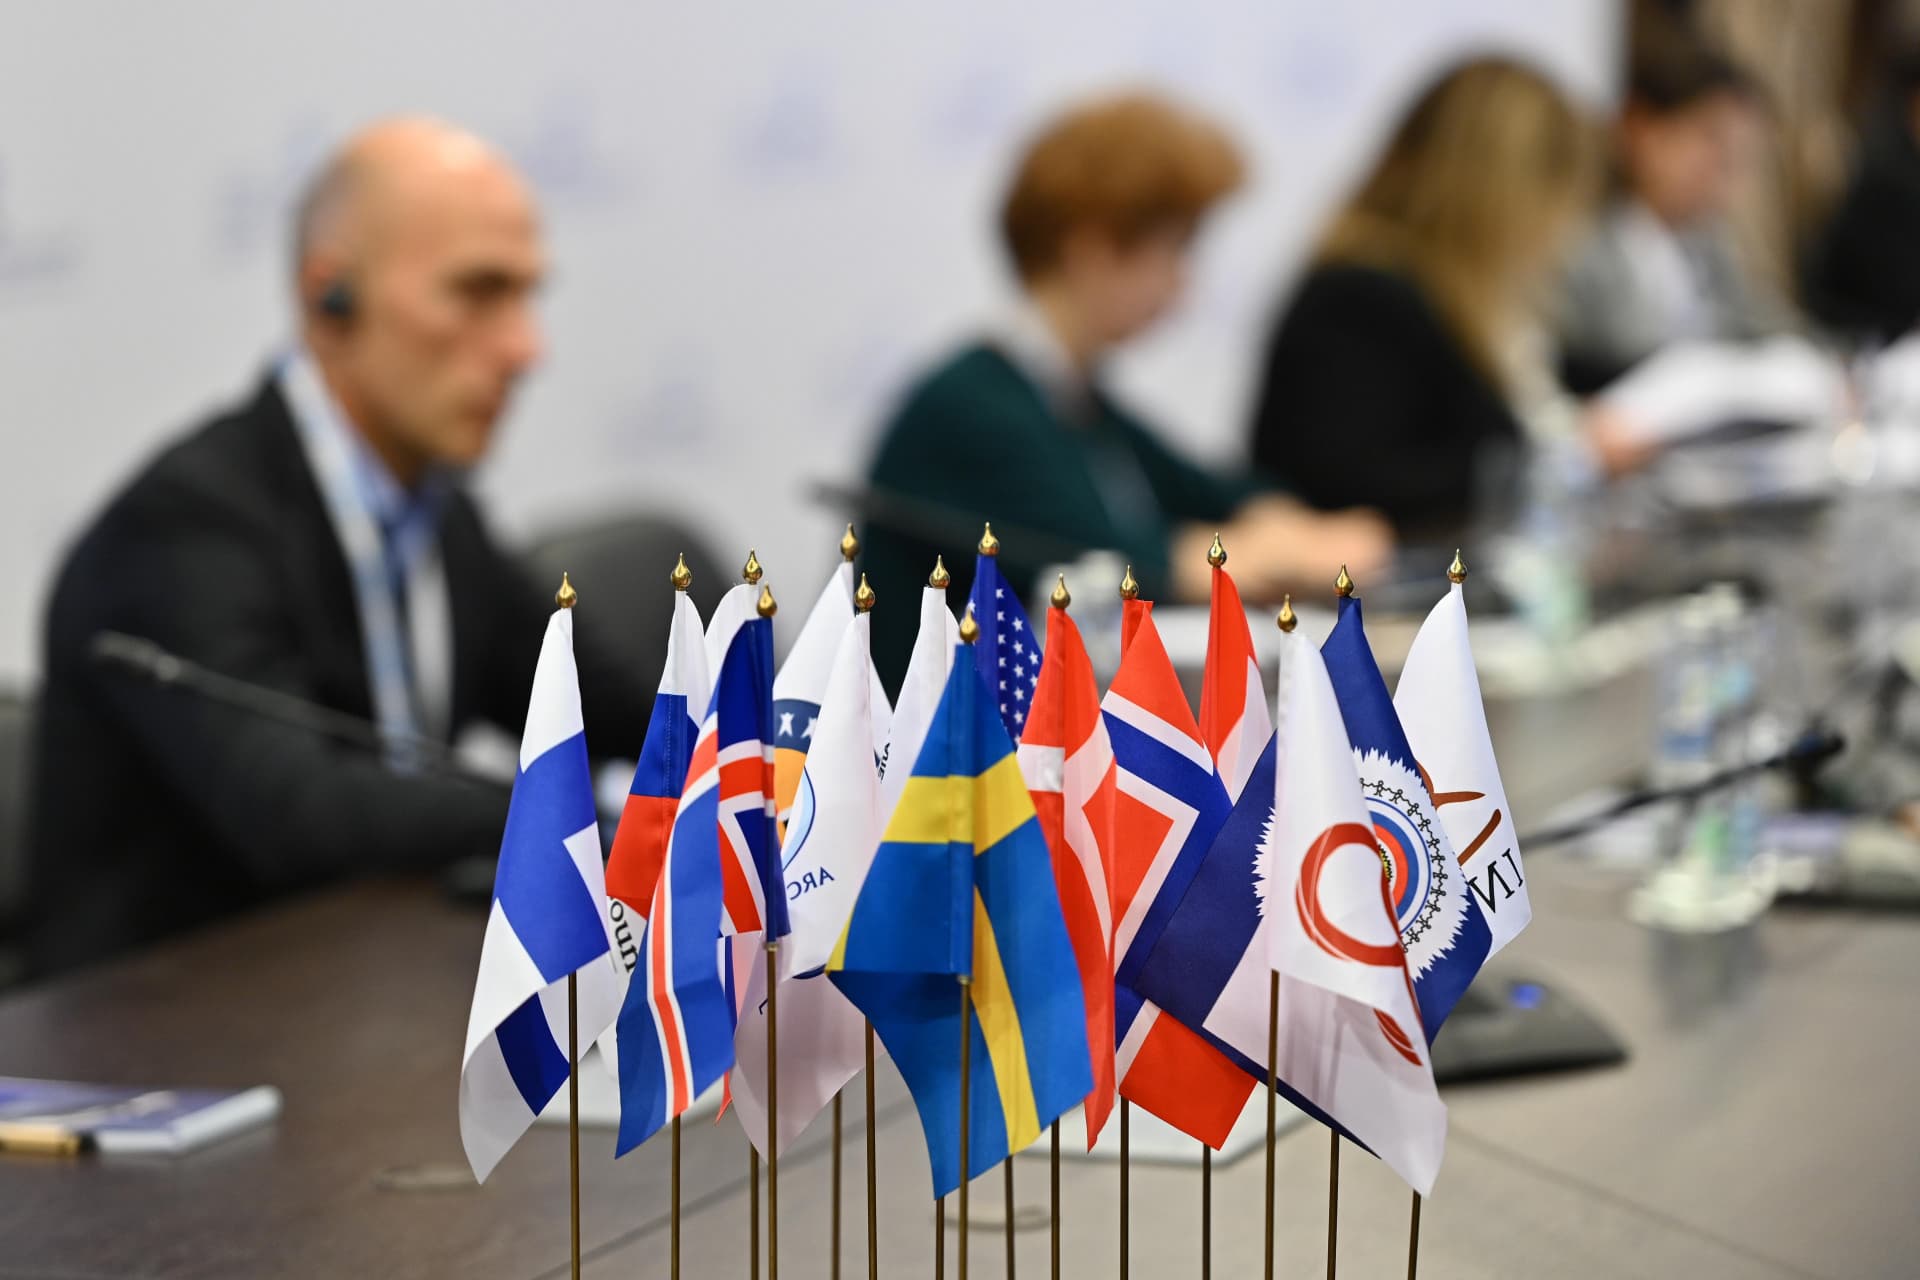 Молодежная международная модель Арктического совета  состоится в Архангельске 14–18 ноября - фото 1